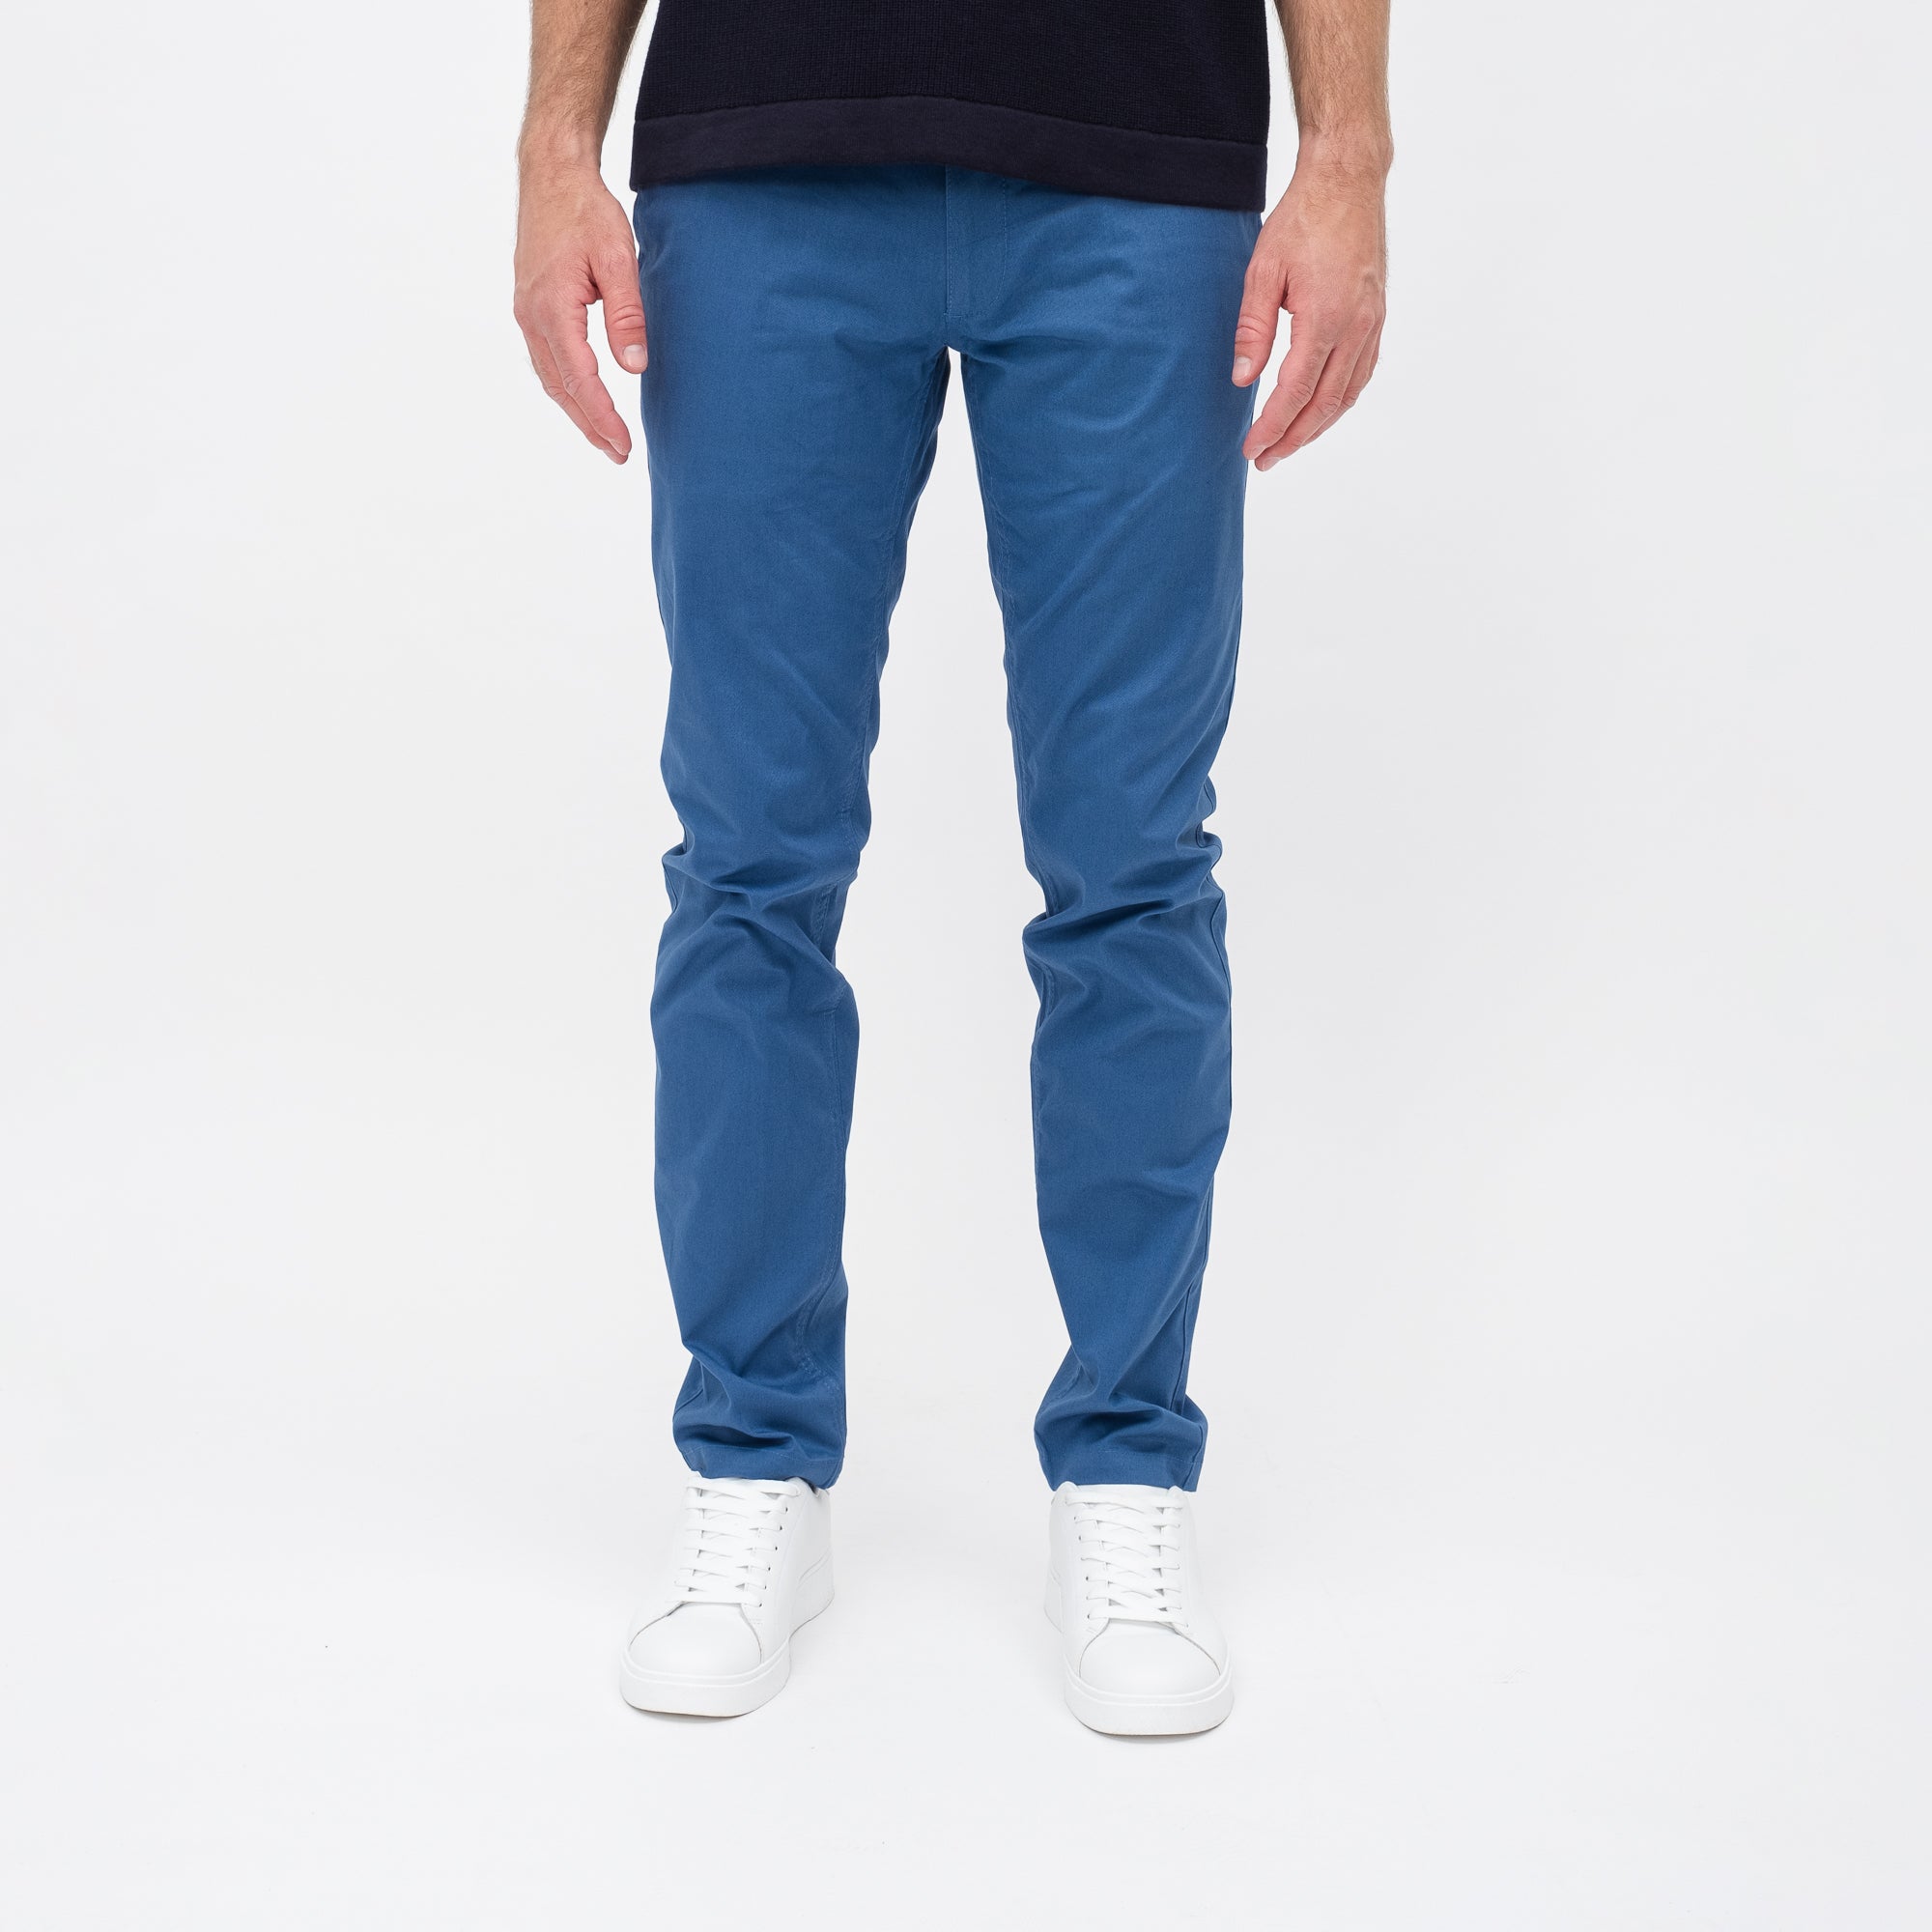 Chino Dunkelblau » Die vielseitigsten Hosen für jeden Anlass – Papas Shorts